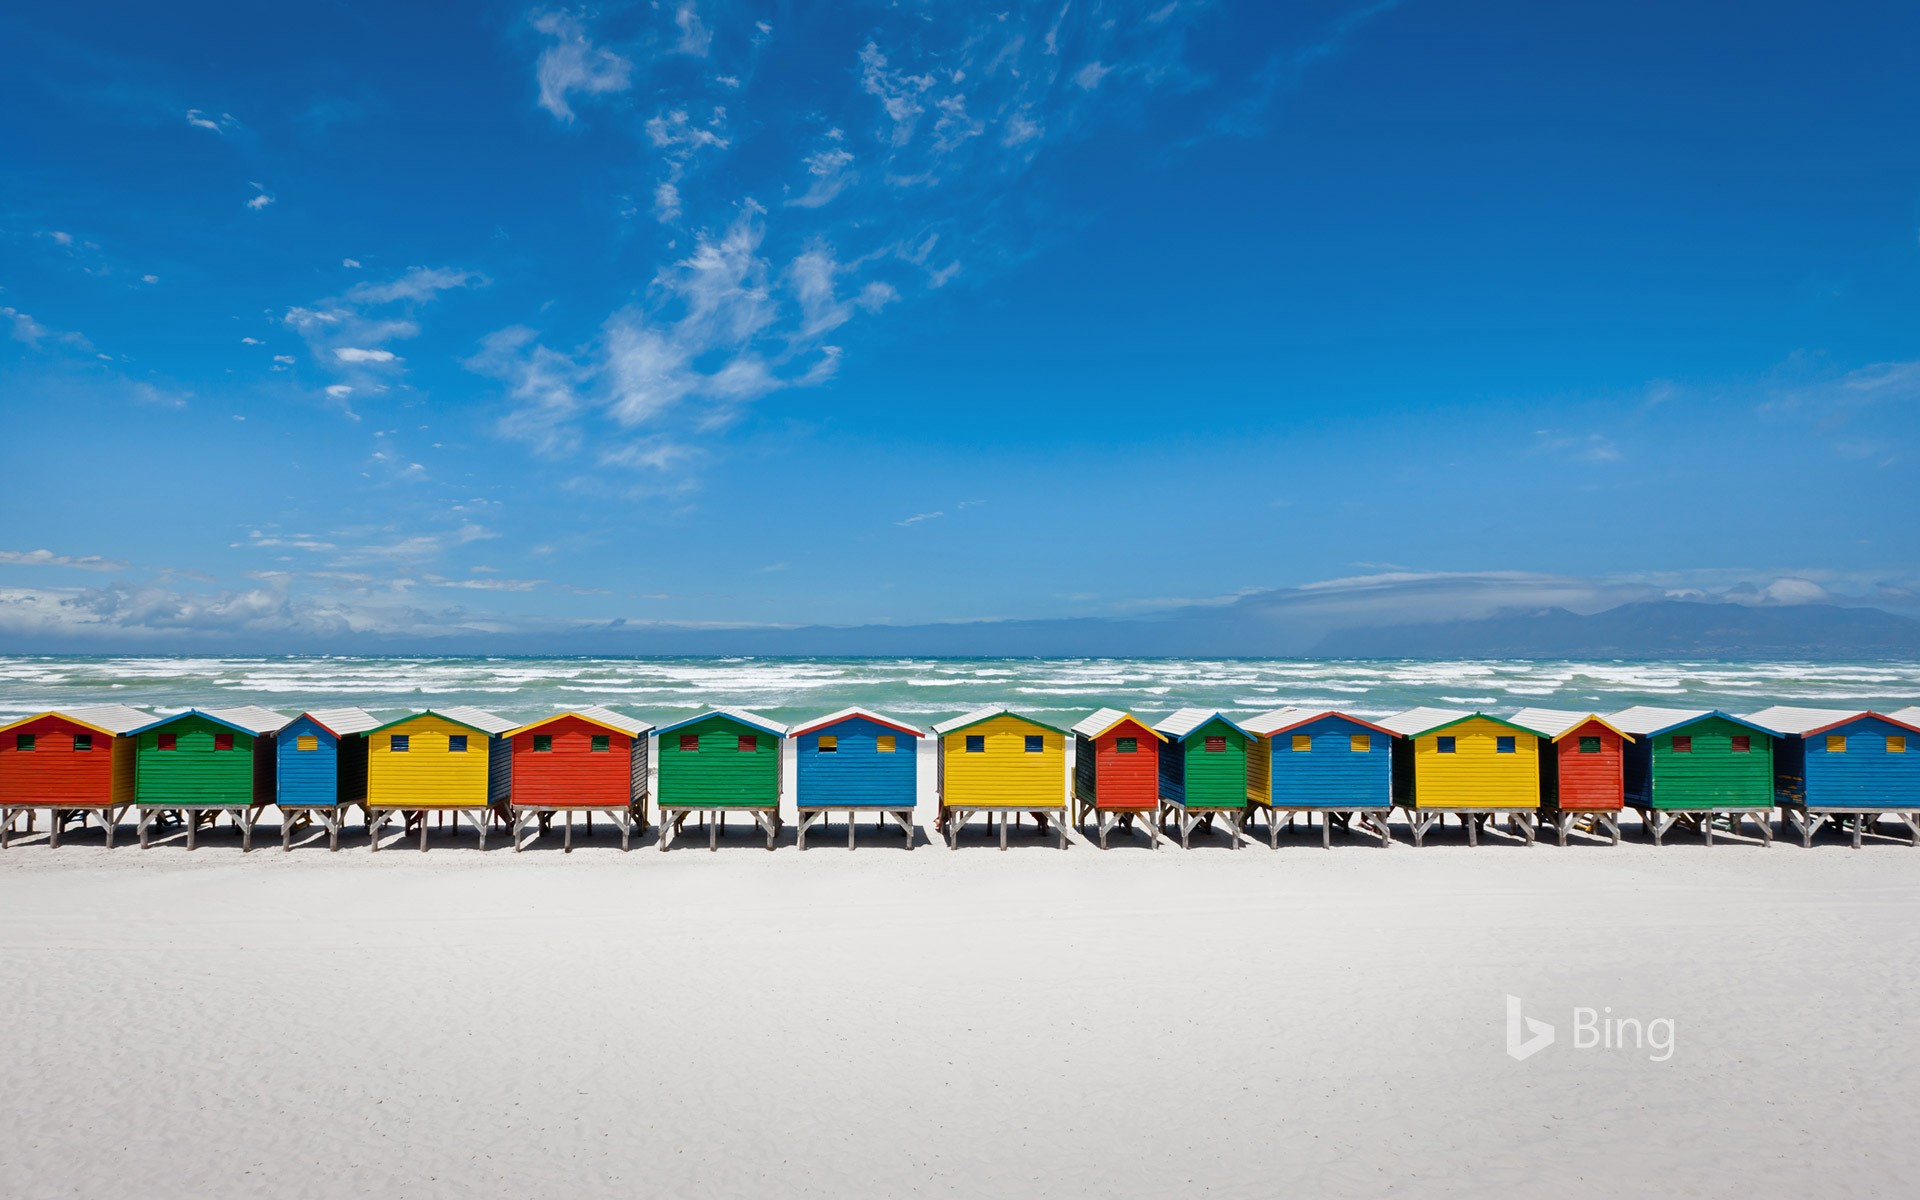 Beach huts in Muizenberg, South Africa